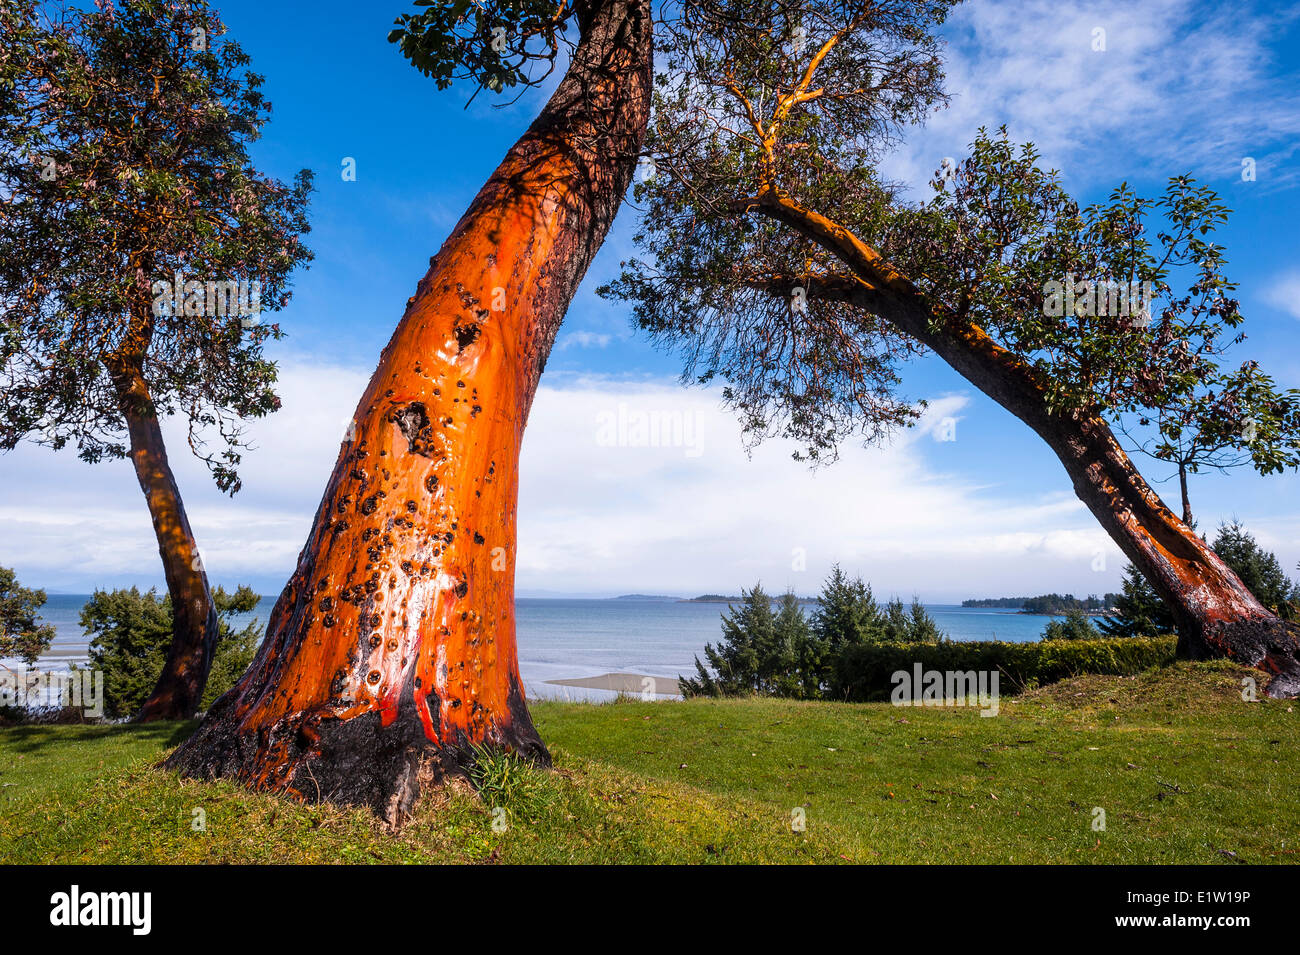 Arbutus tree. Stock Photo